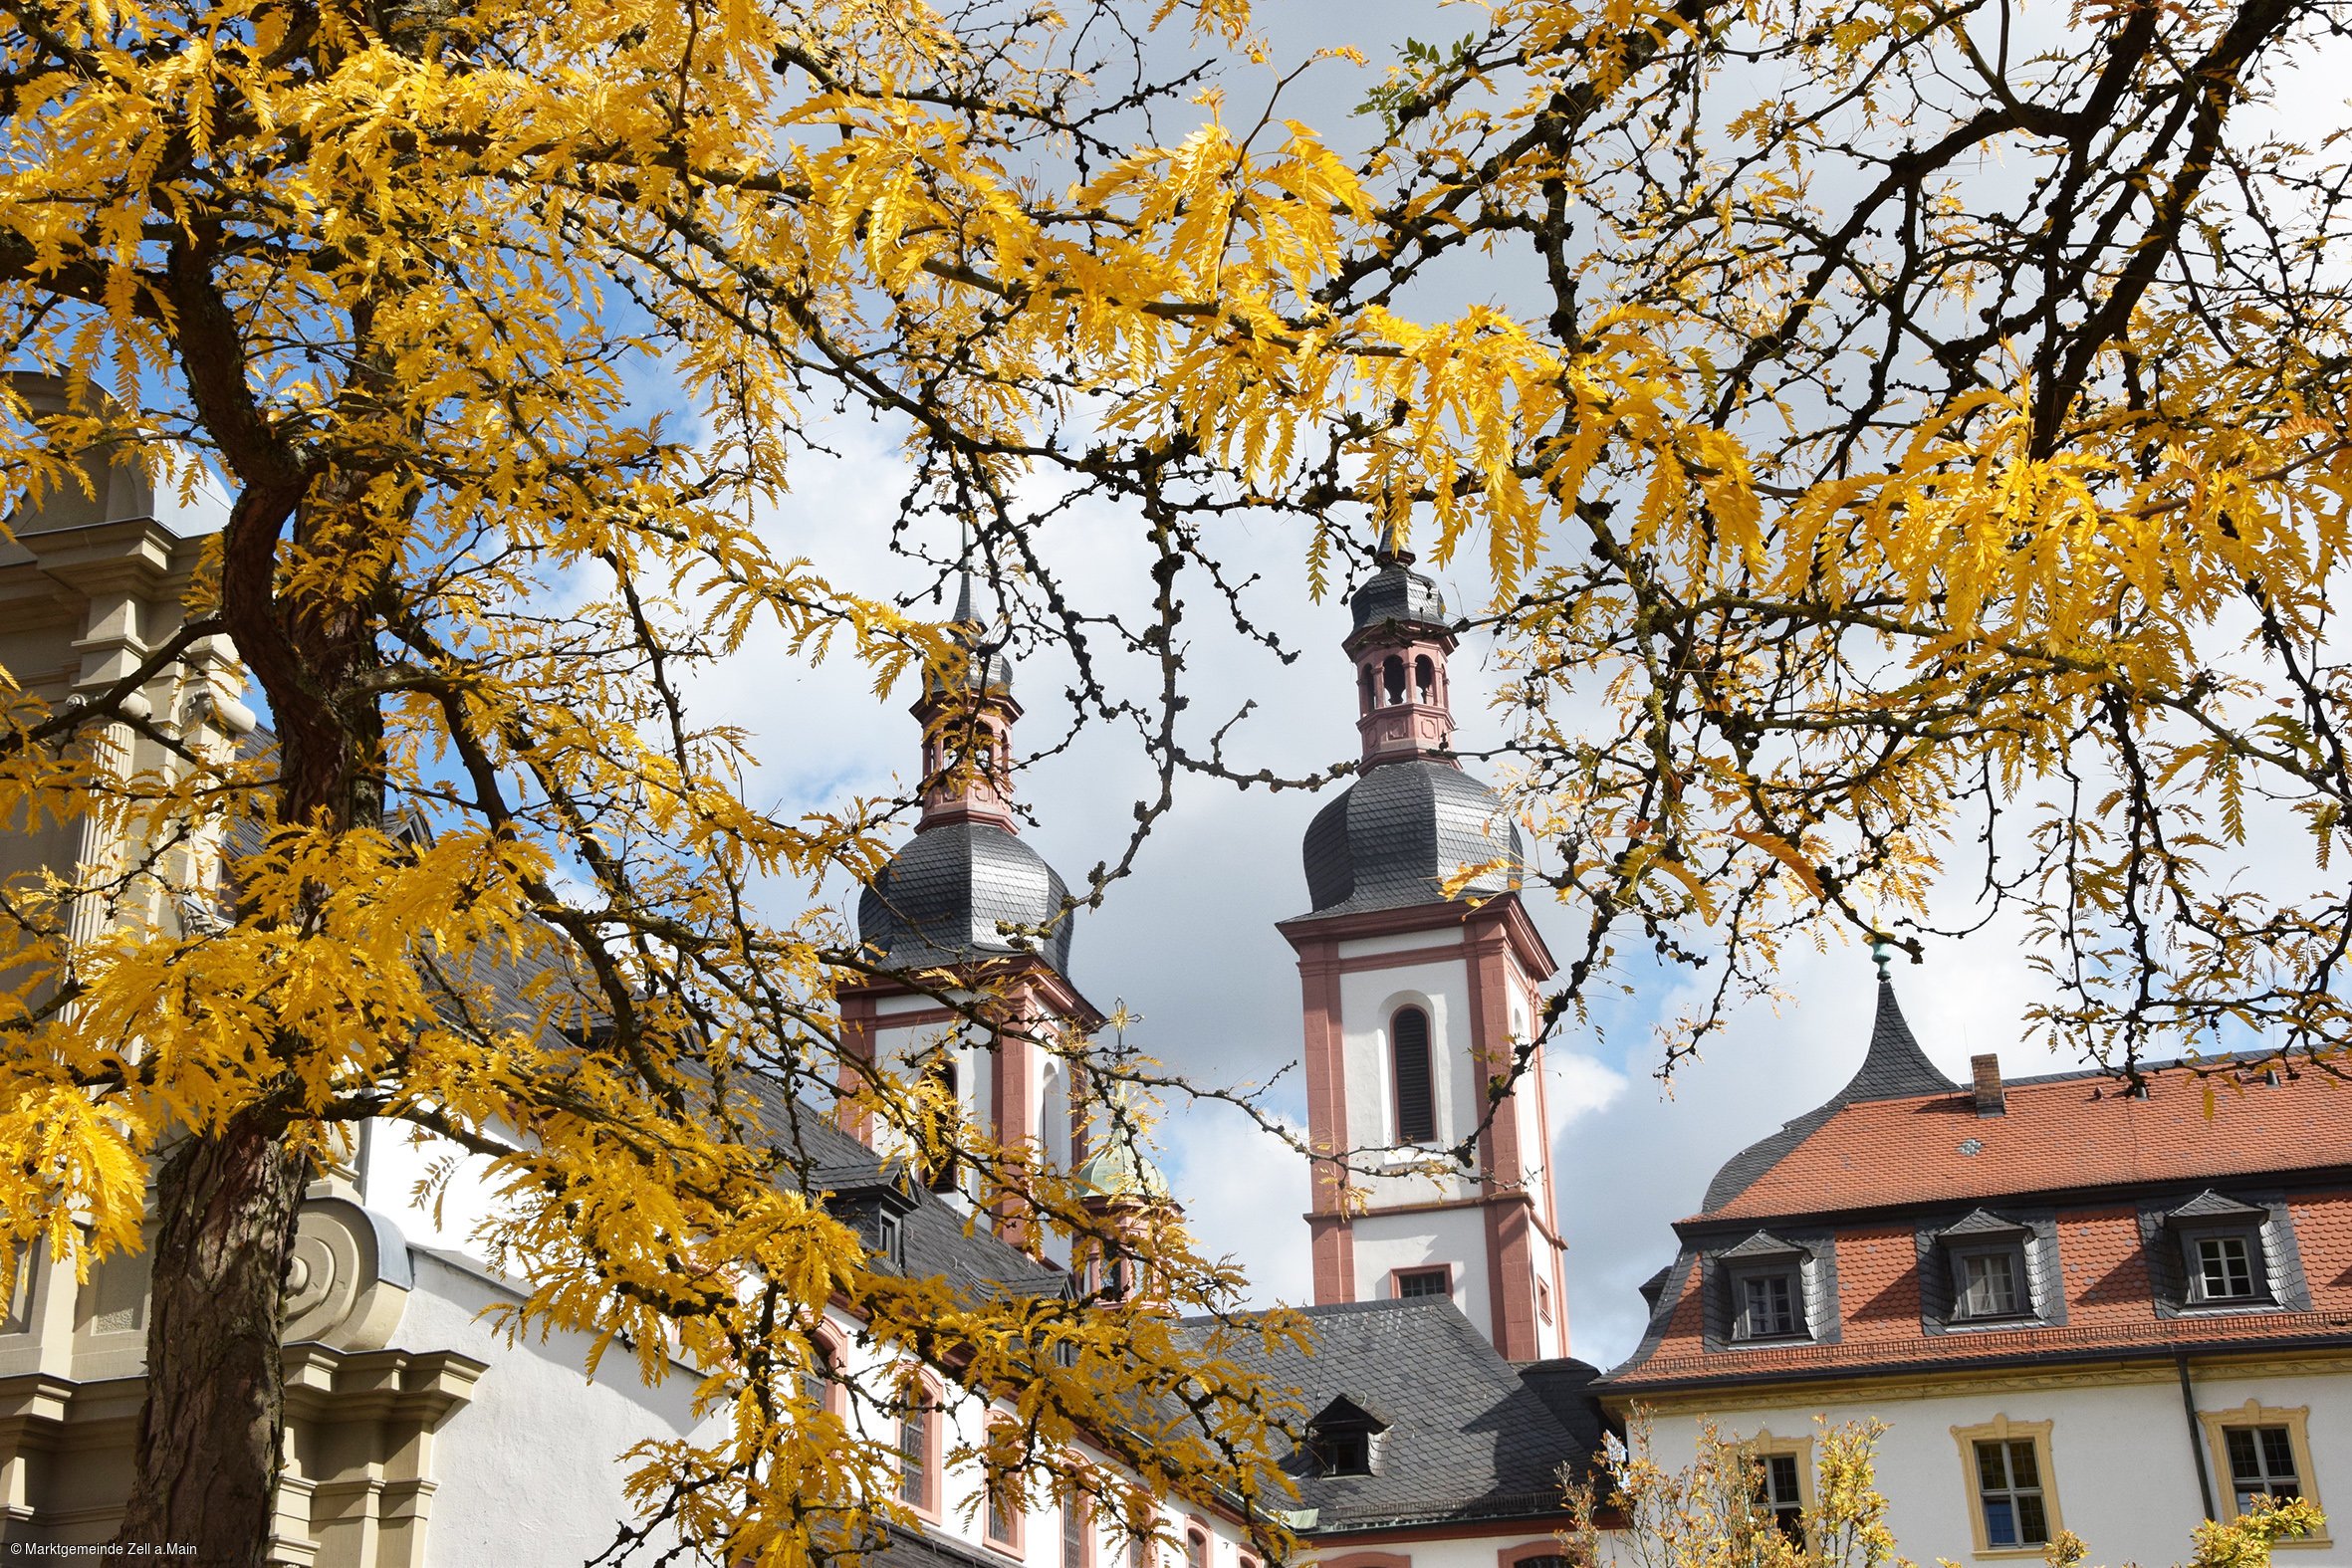 Kloster Oberzell (Zell a.Main, Fränkisches Weinland)